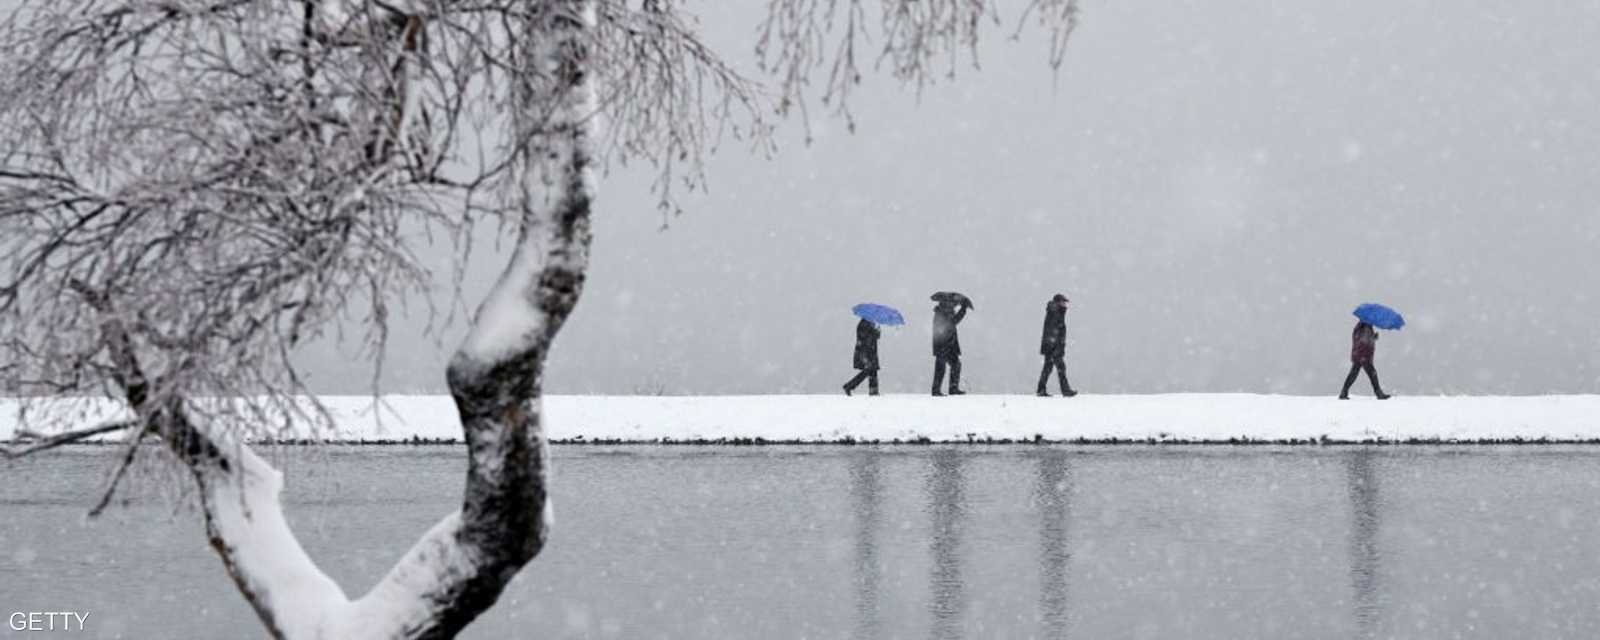 بعض السكان في ألمانيا يسيرون على ضفاف بحيرة وسط الثلوج التي كست كل شيء باللون الأبيض.